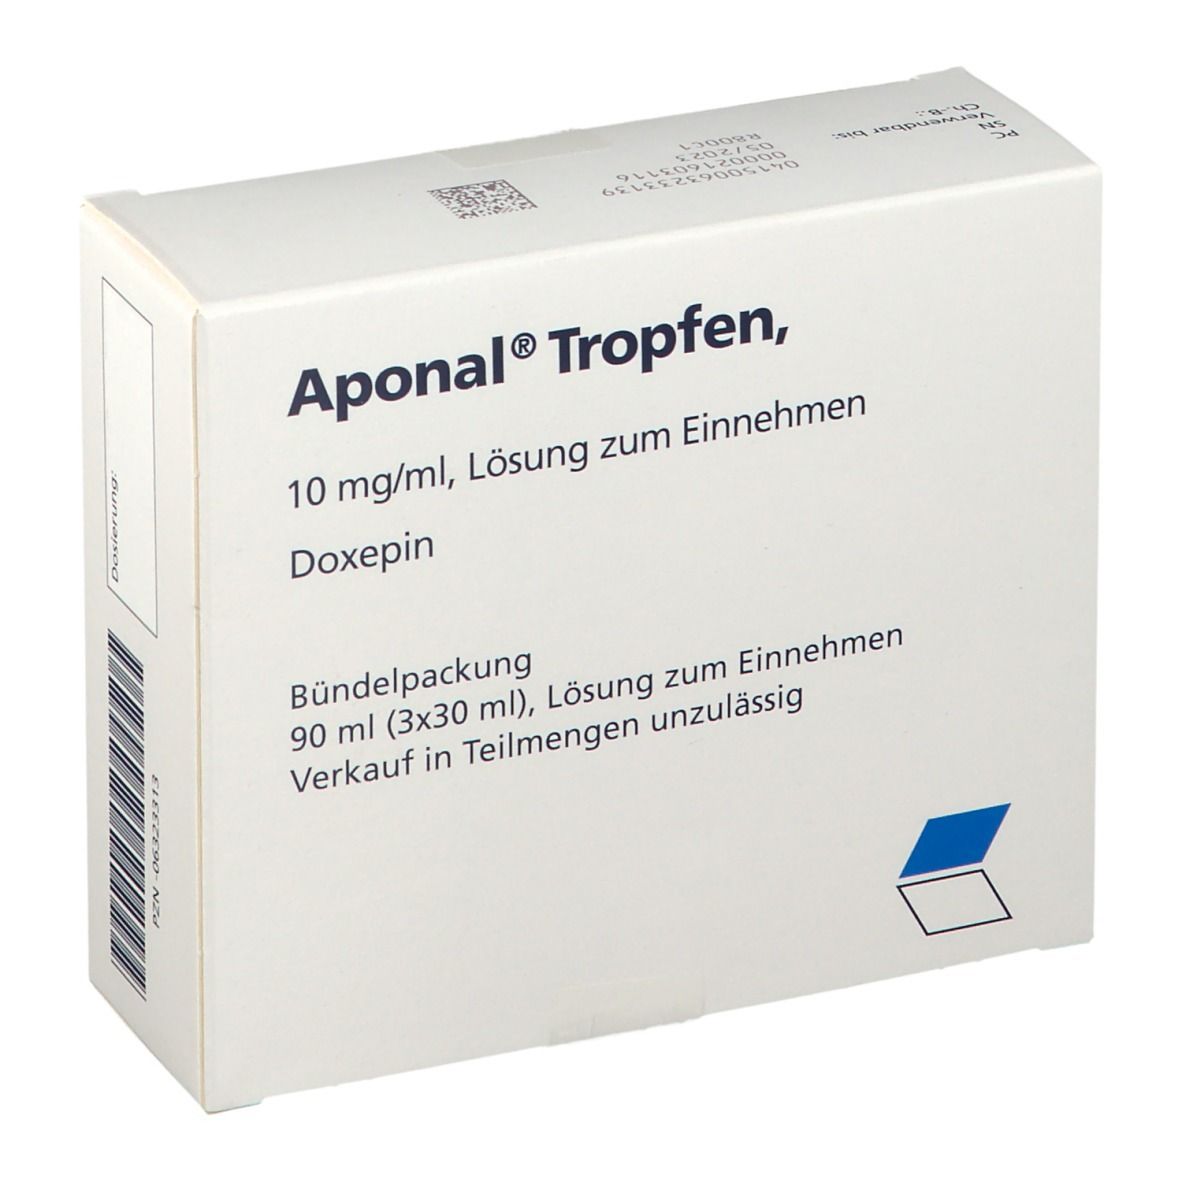 Aponal® Tropfen 10 mg/ml